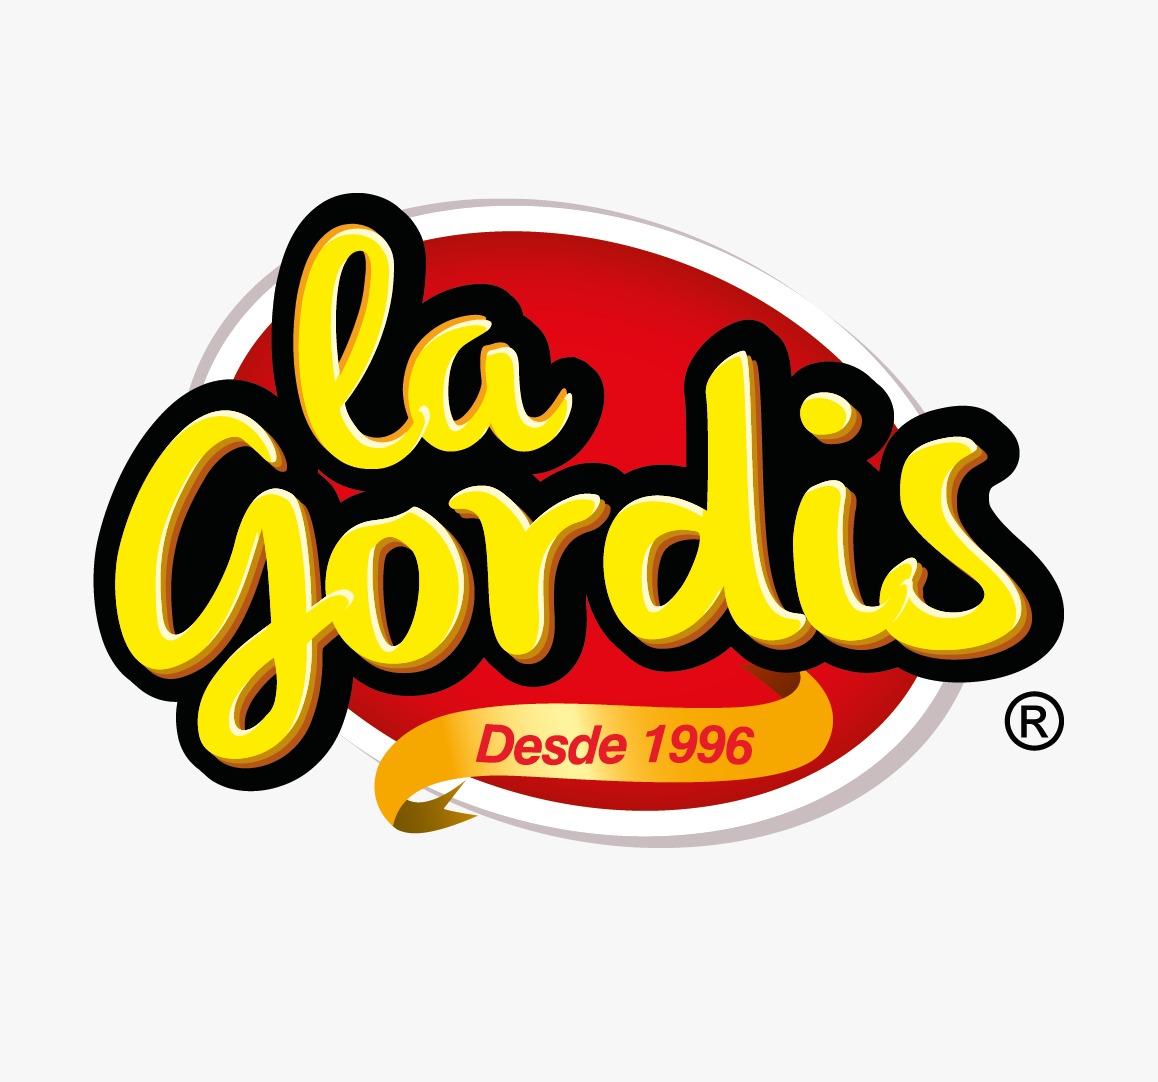 La Gordis logo